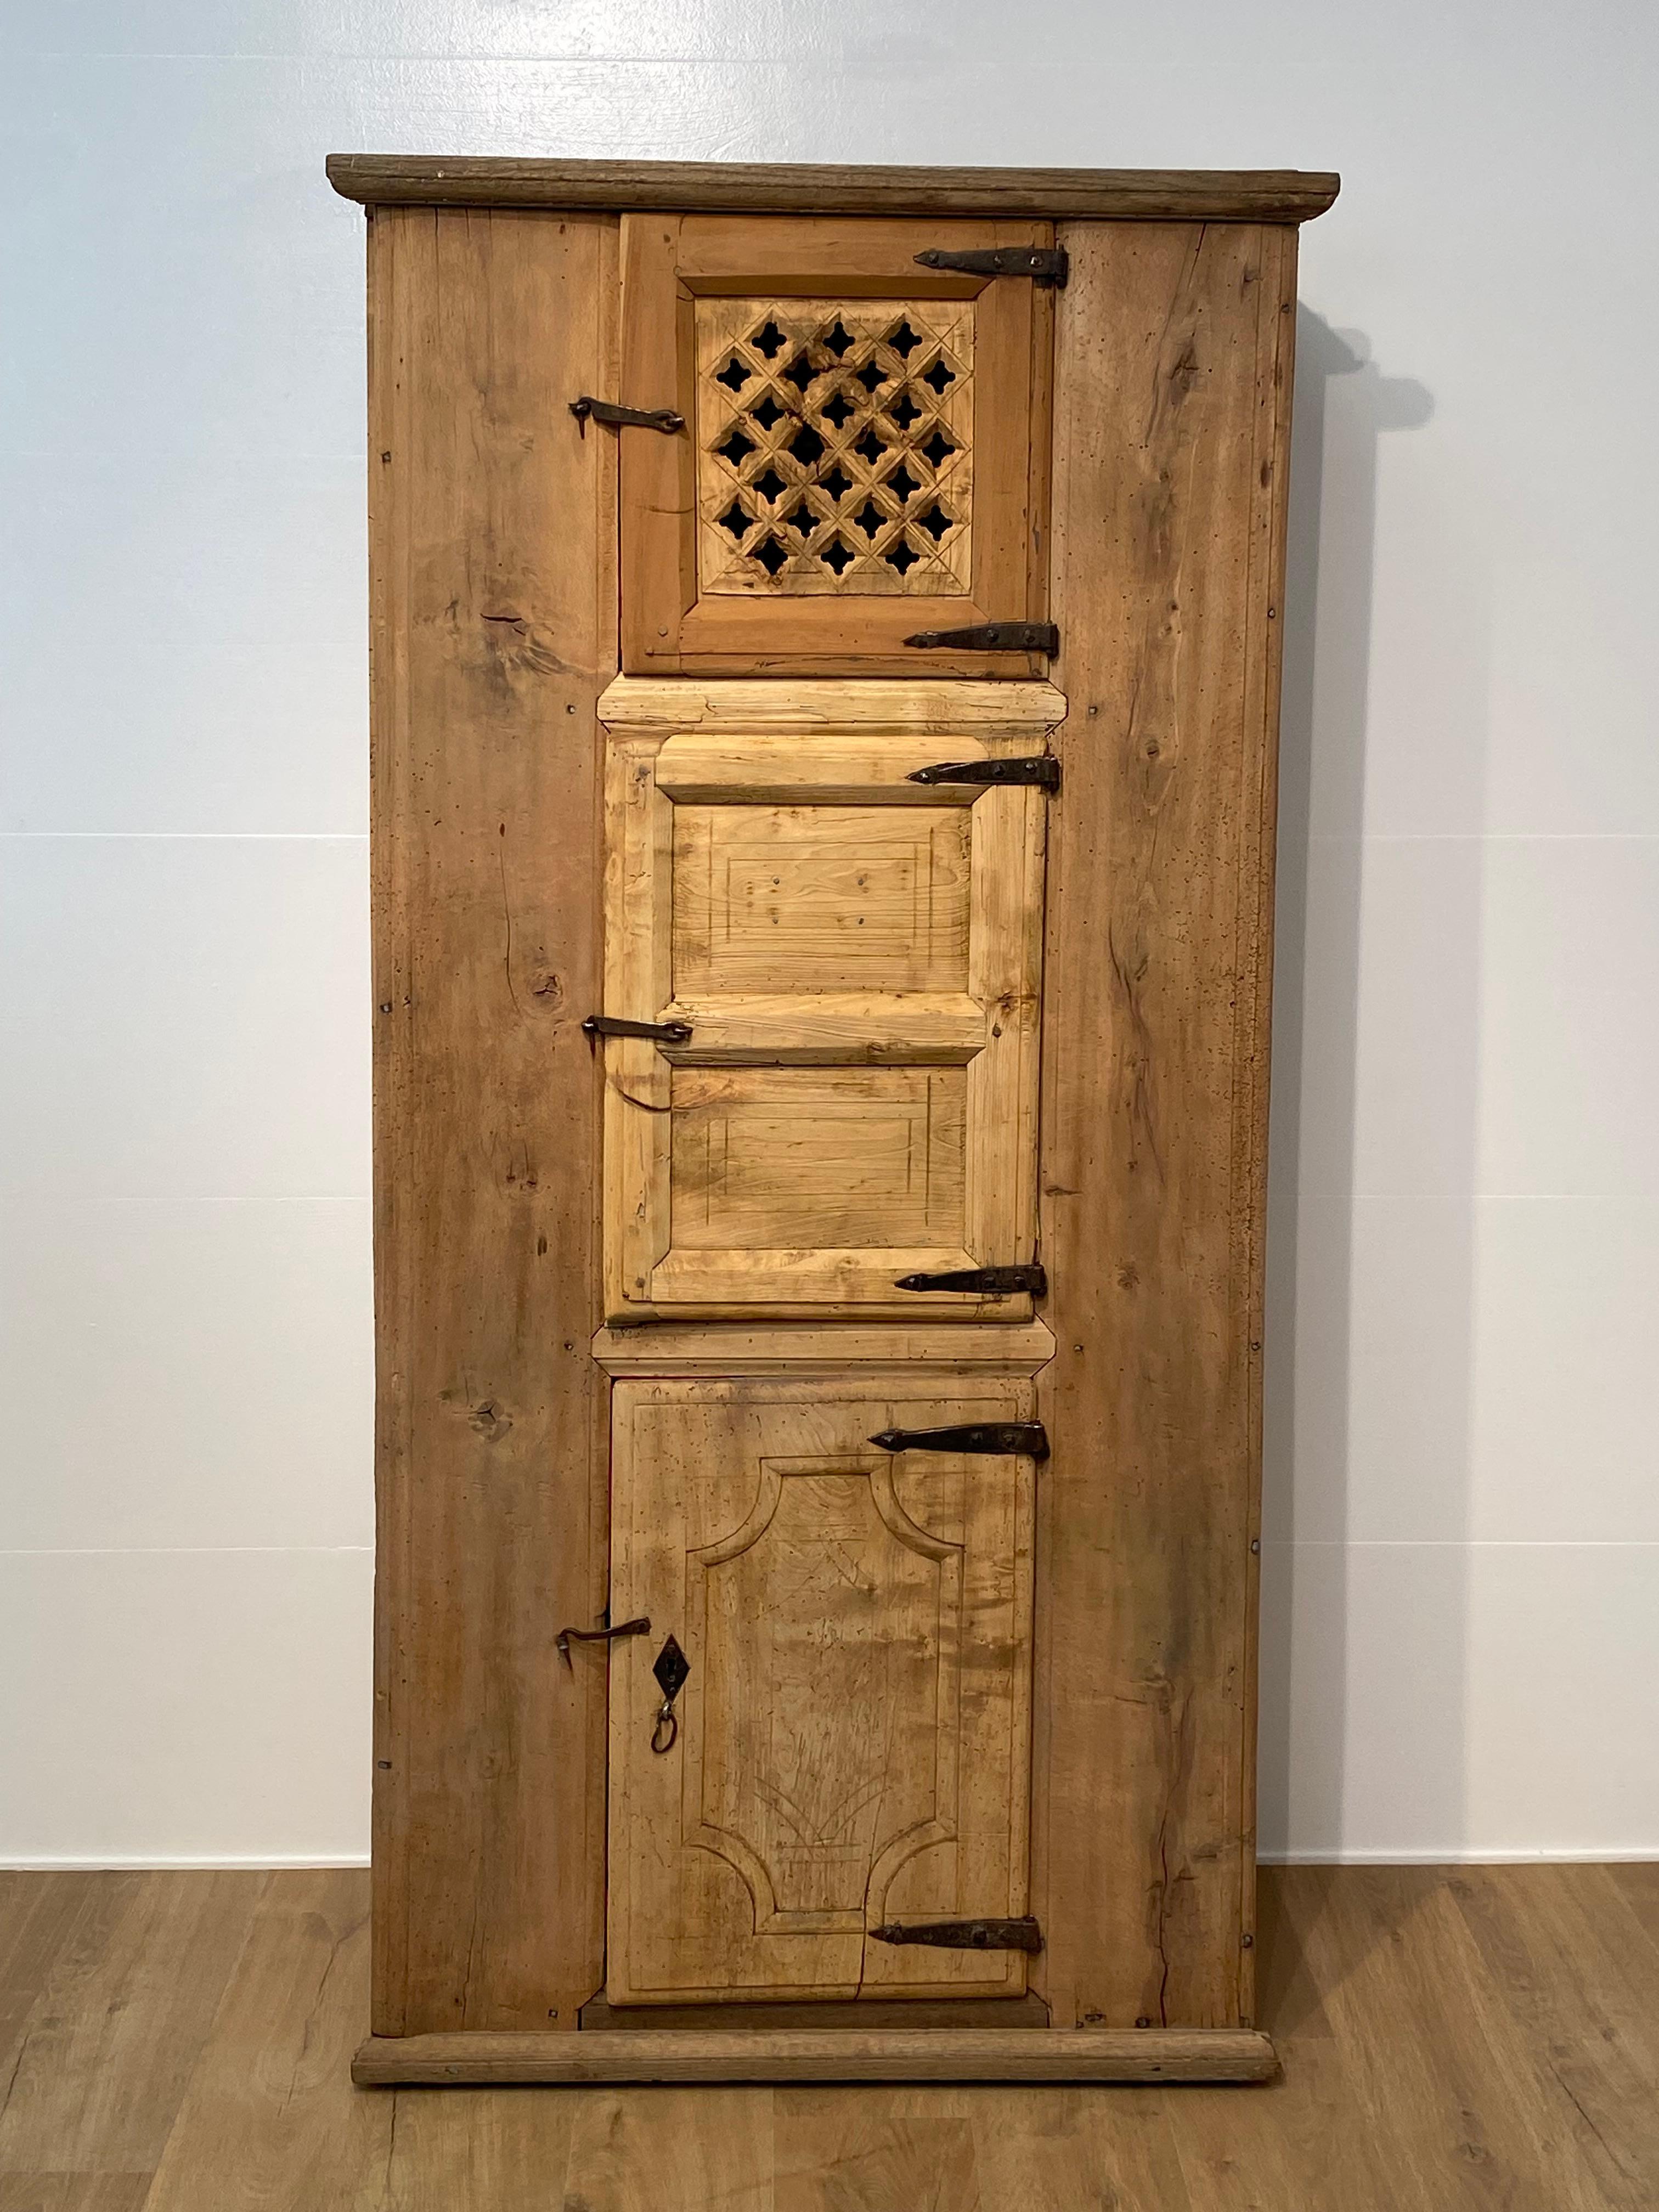 Exceptionnelle armoire de fermier brutaliste de la région catalane du nord de l'Espagne, datant du 19e siècle, une œuvre d'art de l'Arte Povere,
l'armoire est en châtaignier blanchi et autres bois fruitiers,
Il était utilisé pour stocker de la